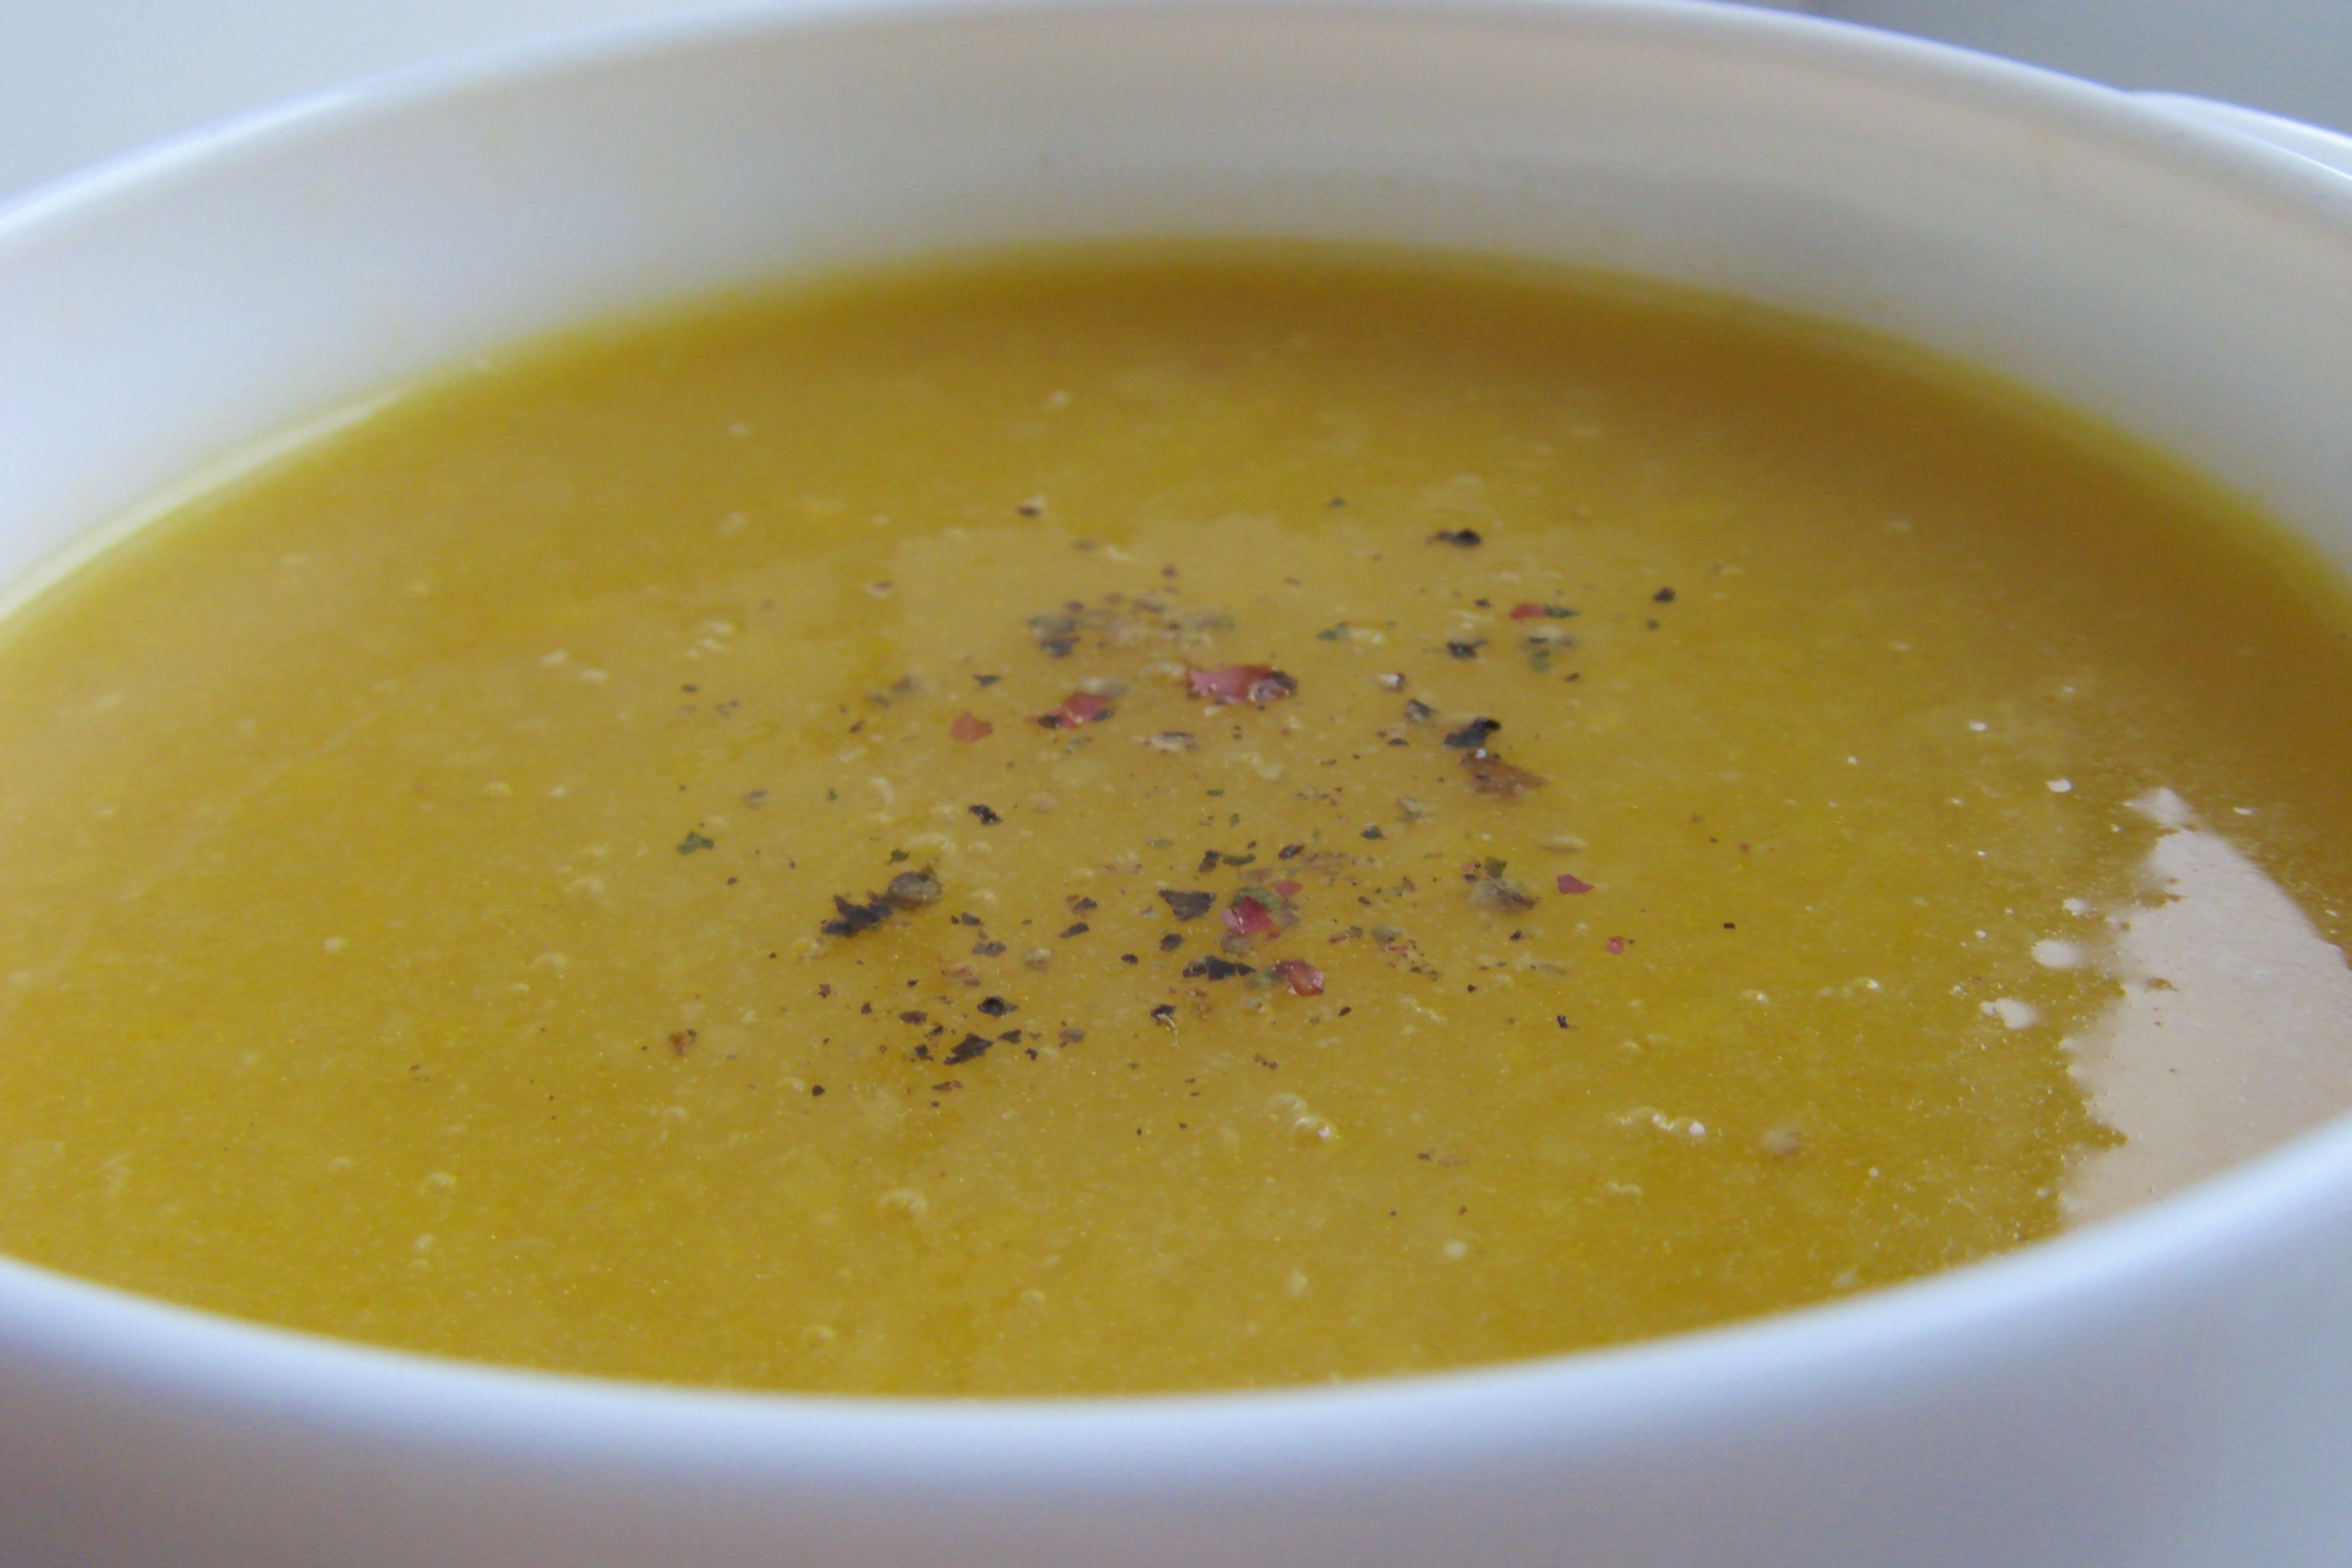 Тыквенный суп-пюре с имбирем